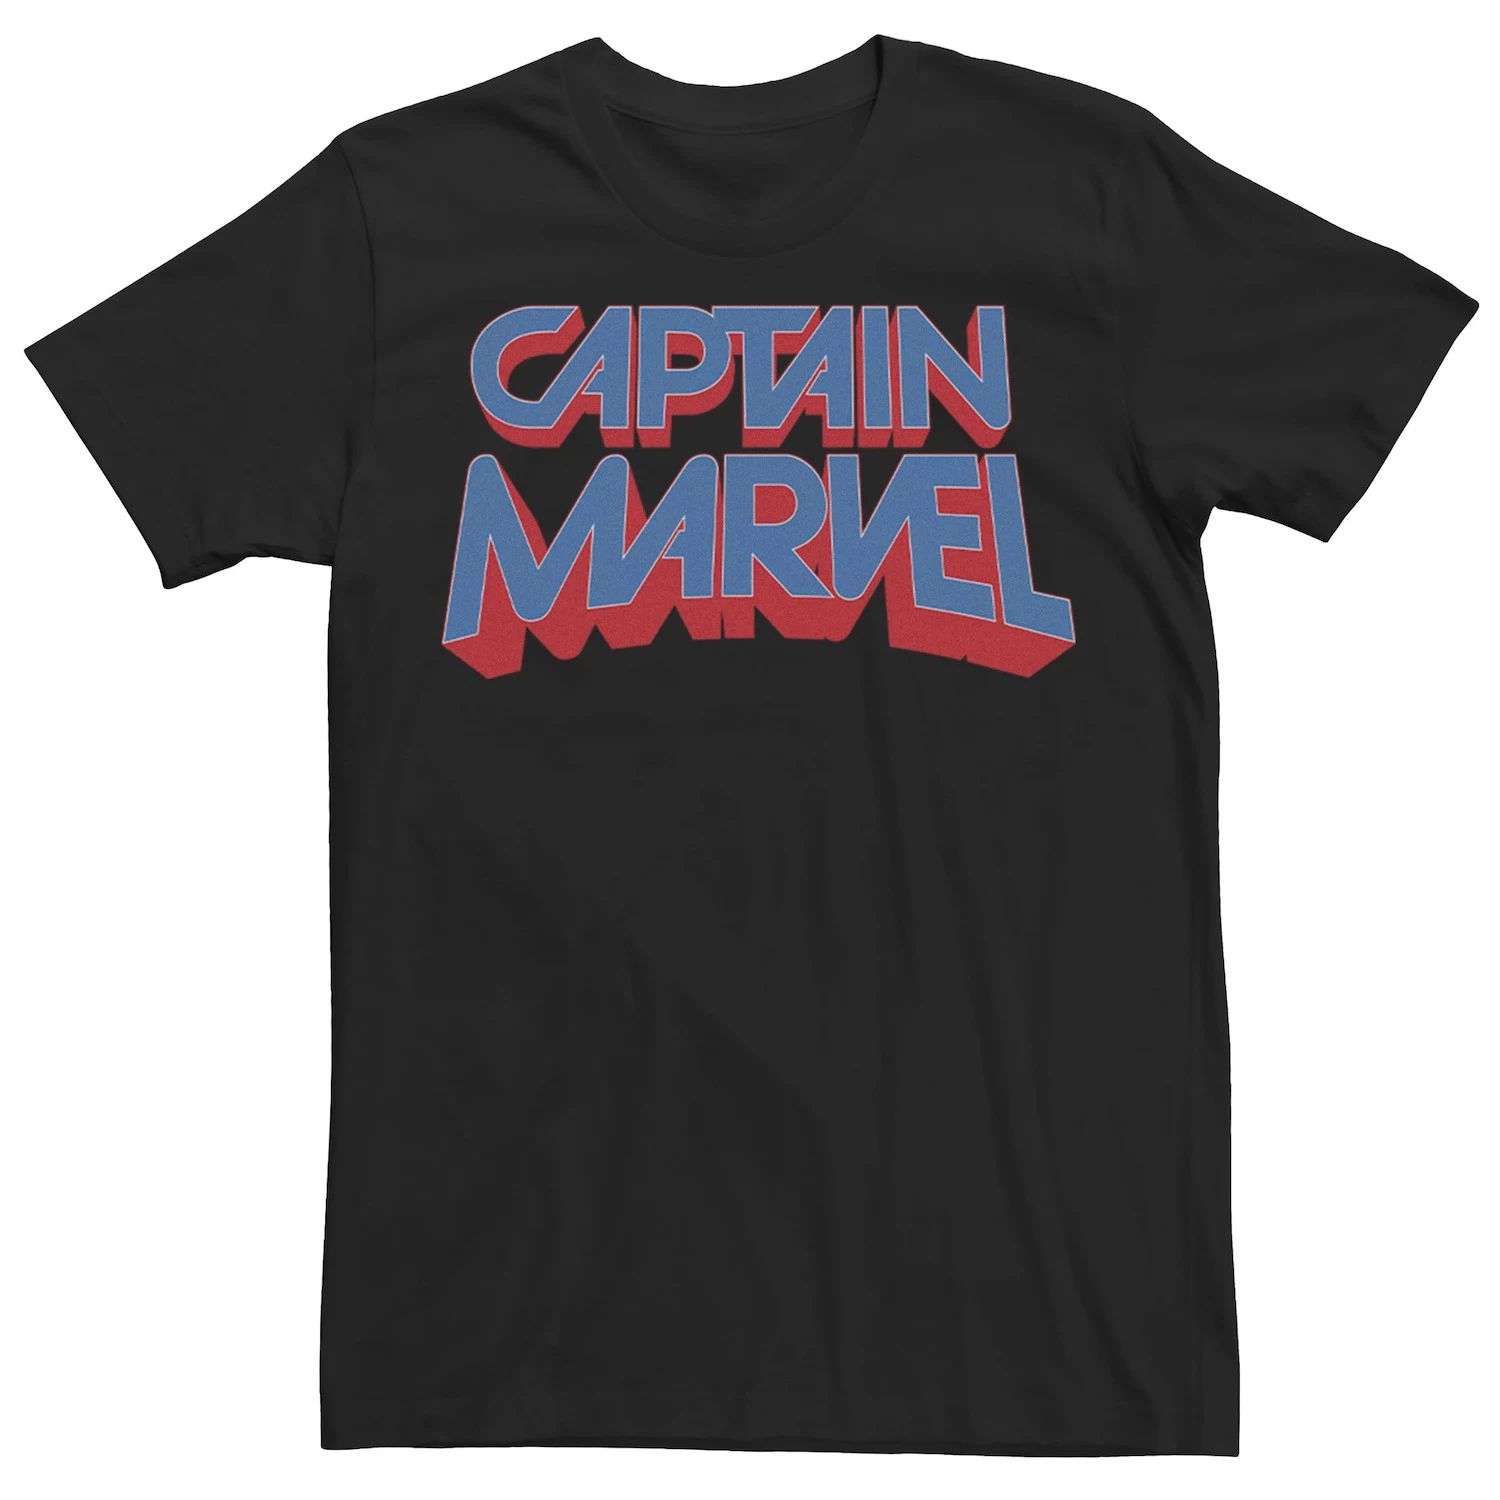 Мужская футболка с графическим логотипом Captain Movie Marvel мужская футболка с рваным винтажным круглым логотипом marvel captain marvel и графическим рисунком